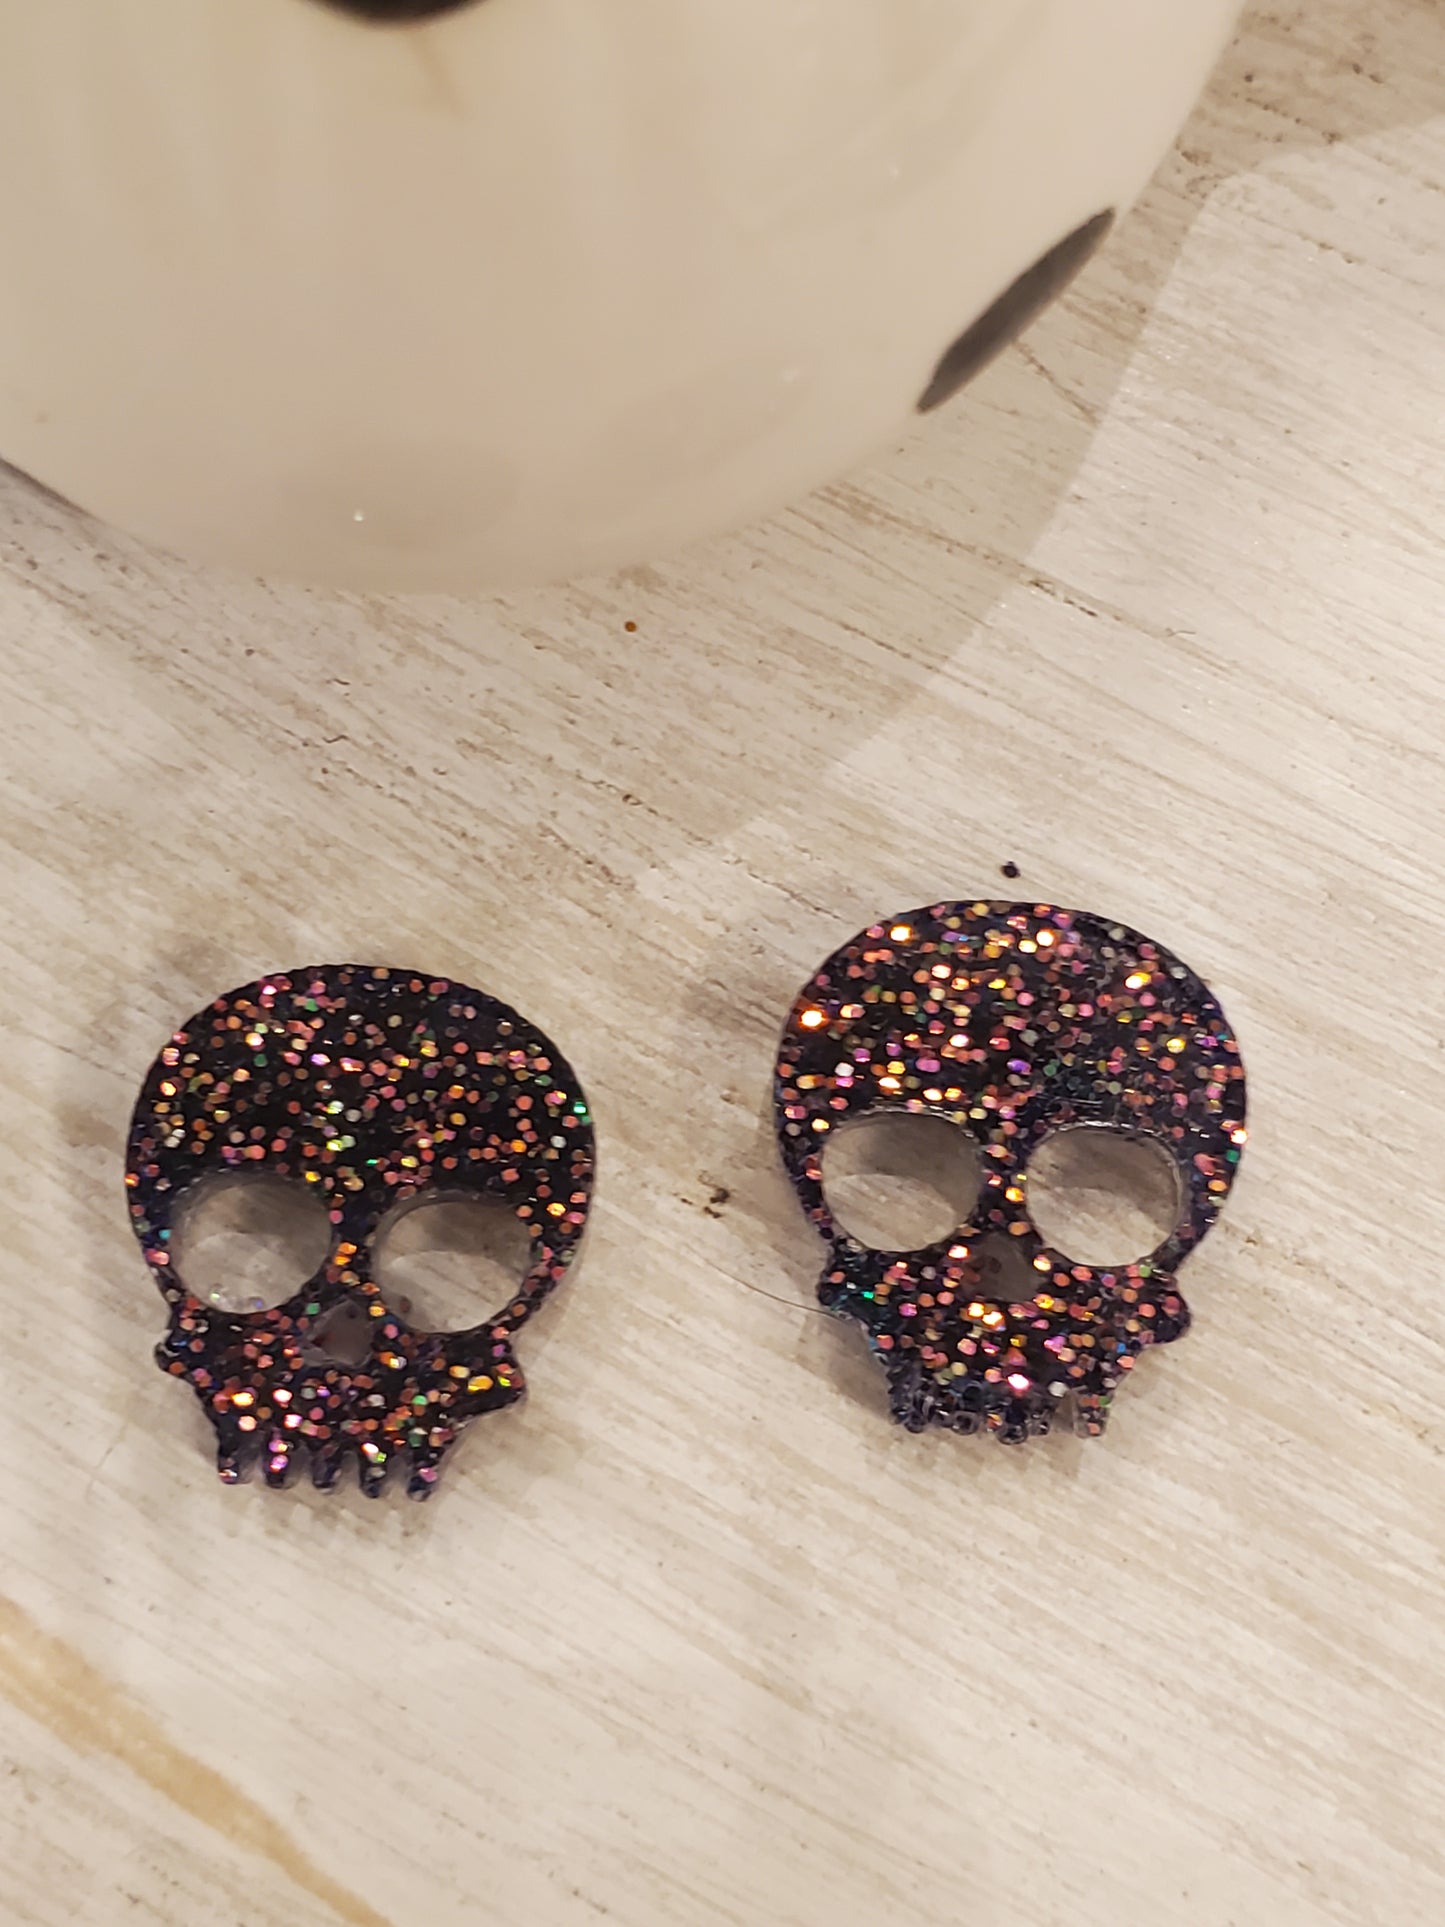 Handmade resin and glitter Skull Multi earrings small studs